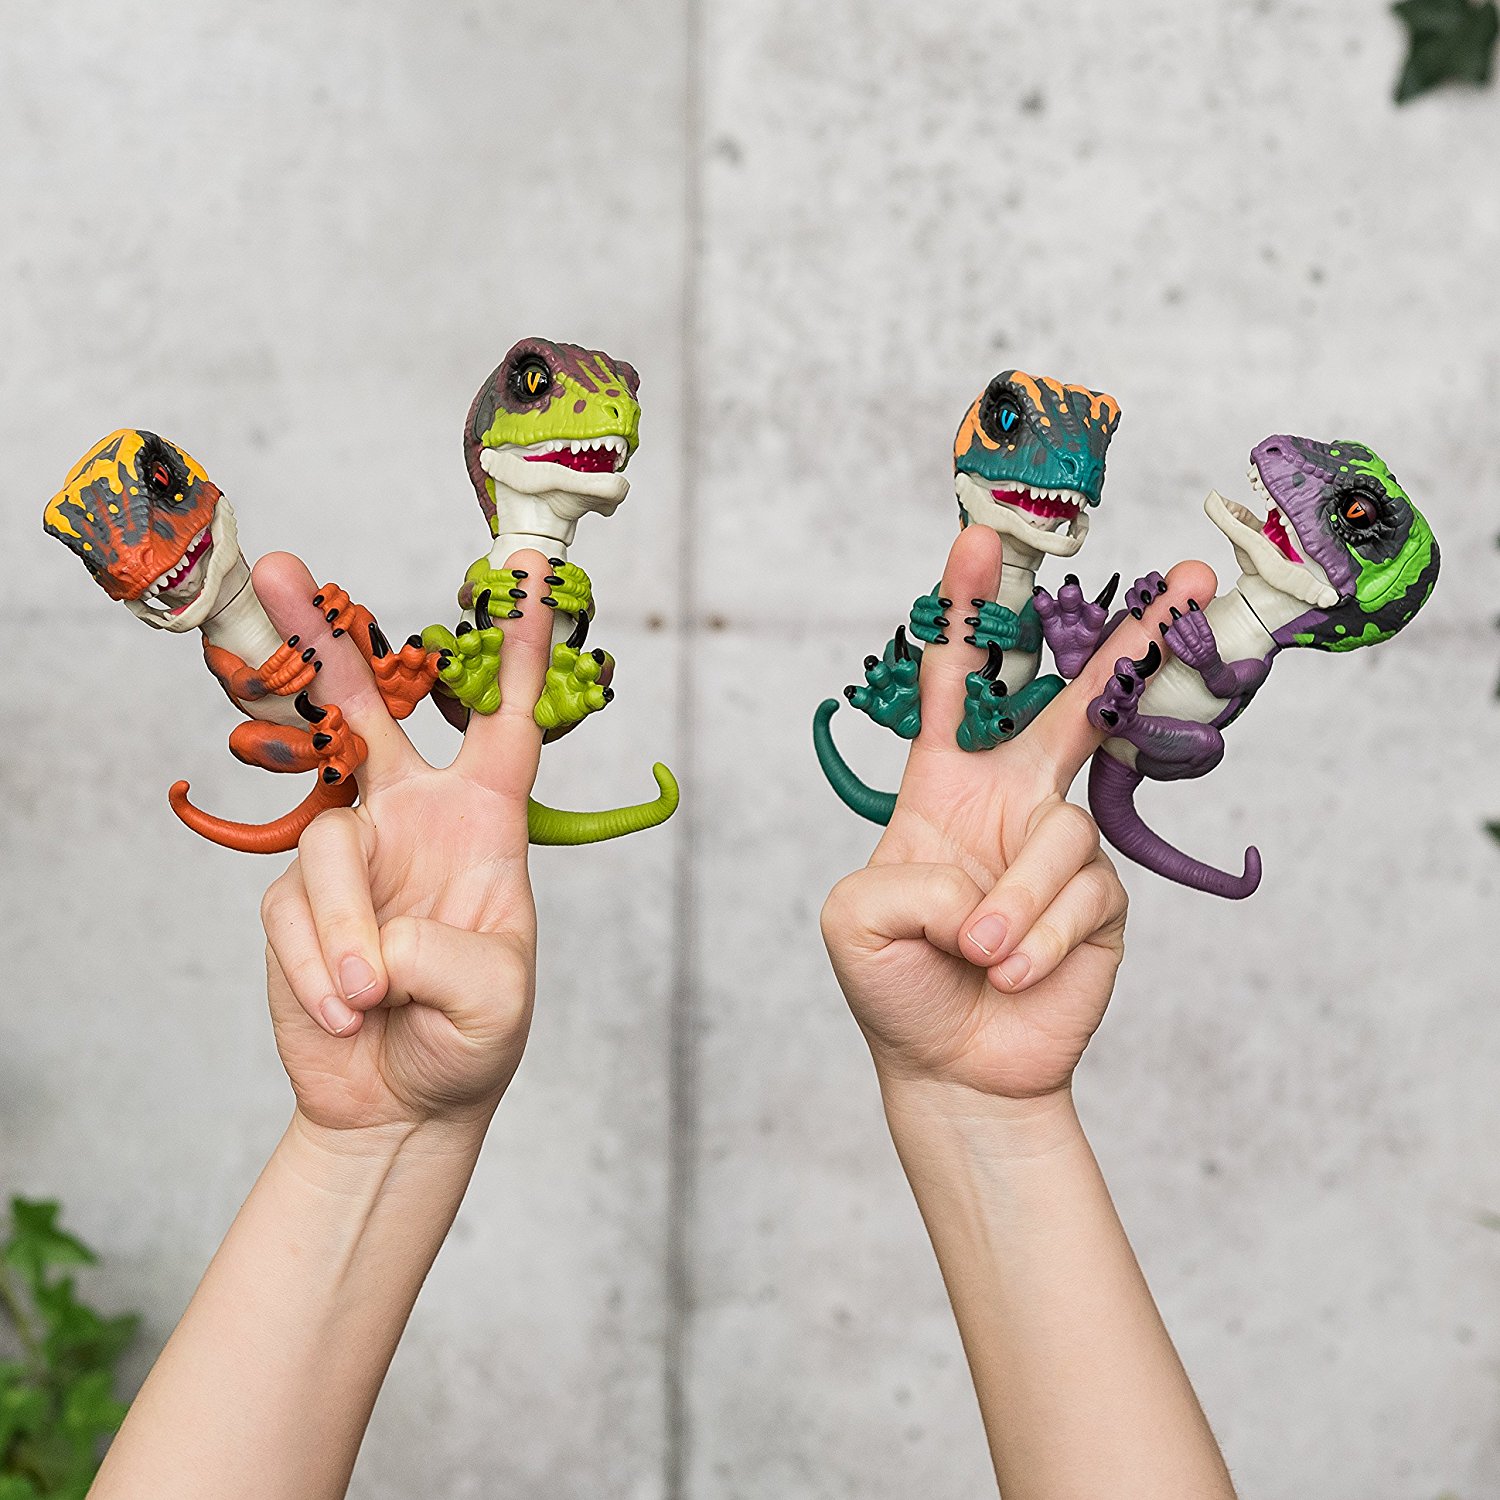 Интерактивный динозавр Fingerlings – Стелс, зеленый с фиолетовым, 12 см, звук  